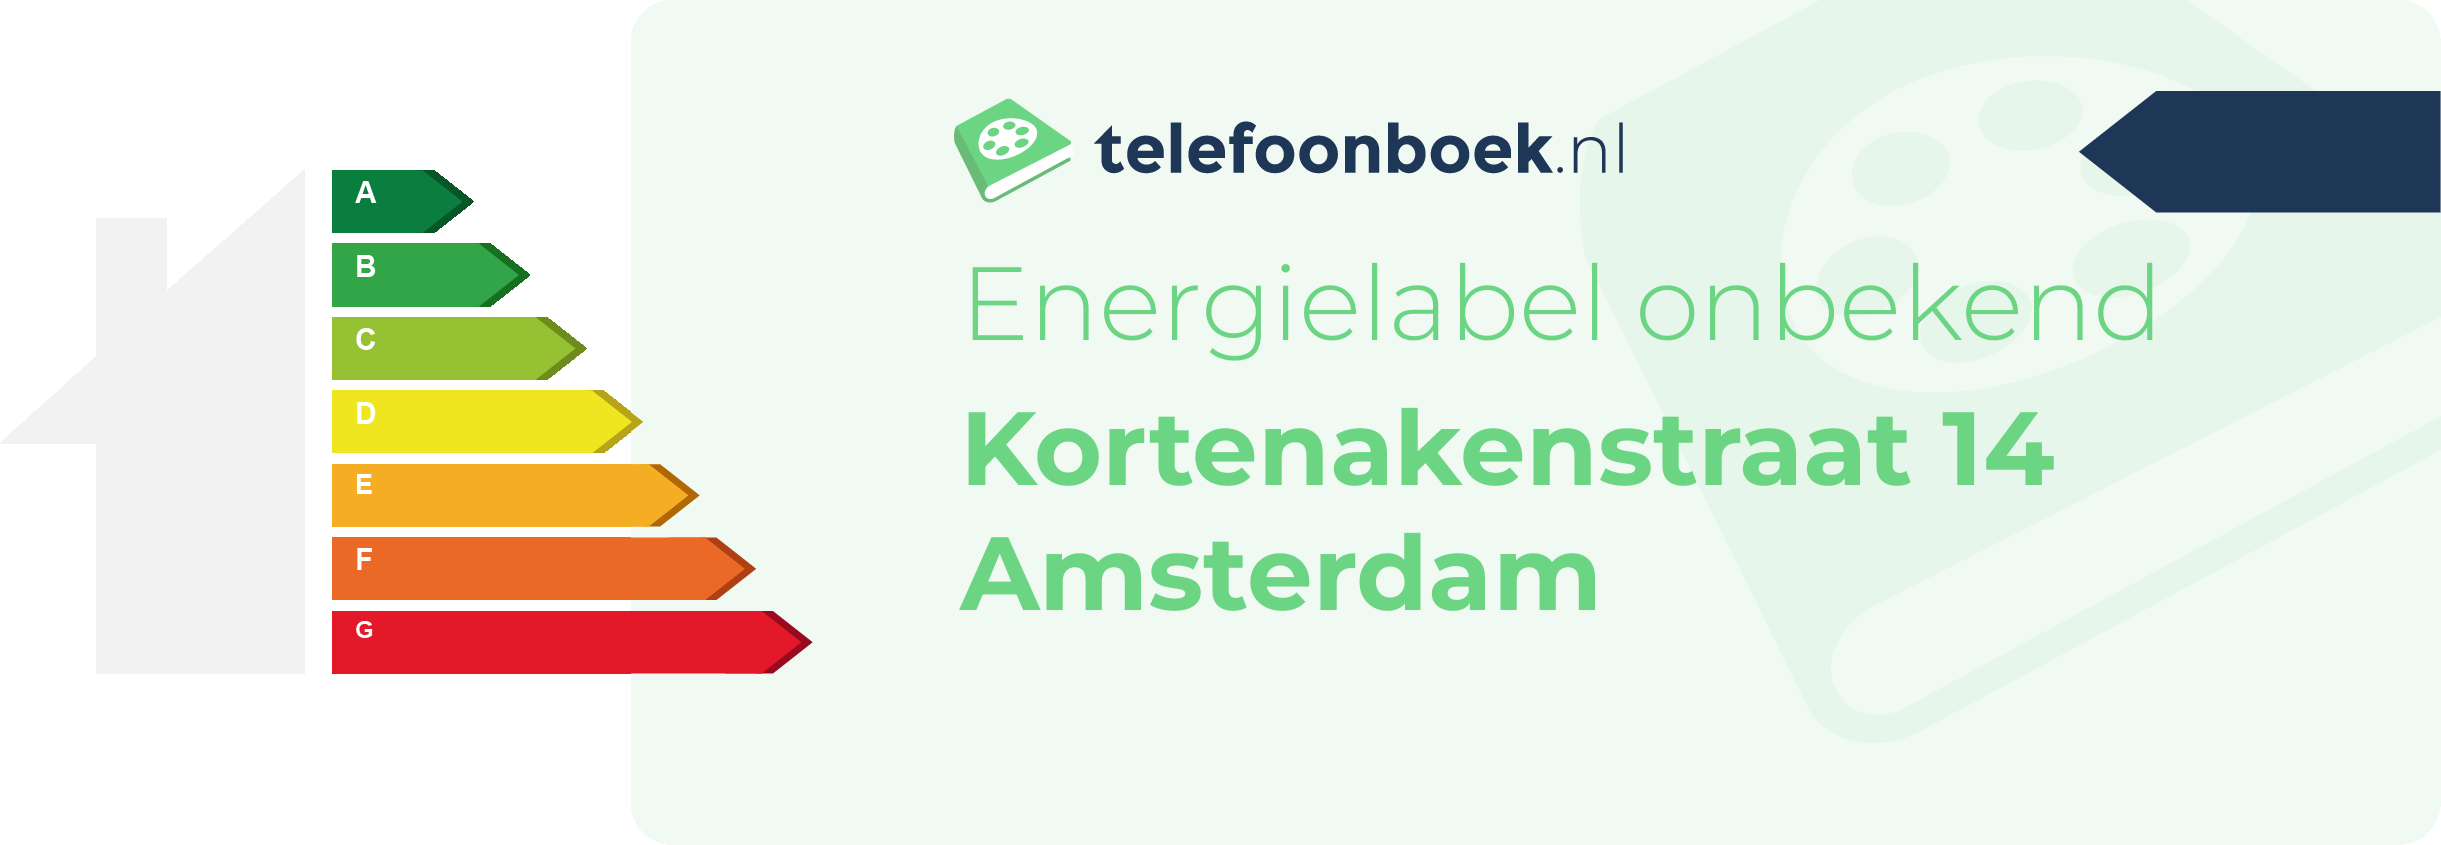 Energielabel Kortenakenstraat 14 Amsterdam